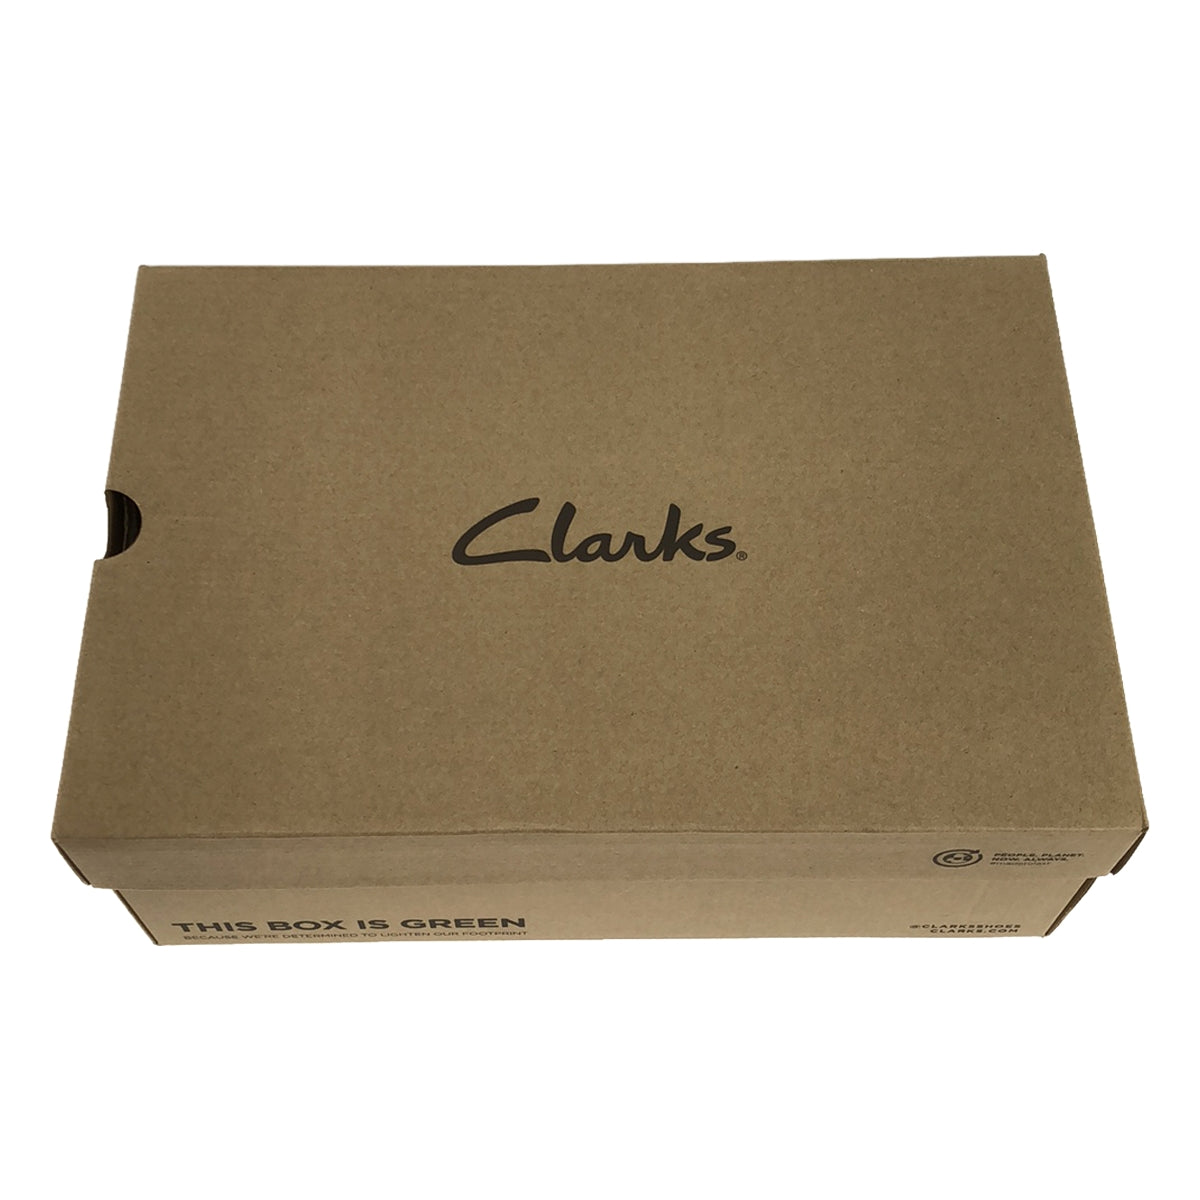 clarks / クラークス | TORHILL HI / スエード レザー トーヒルハイ シューズ | UK9 | メンズ